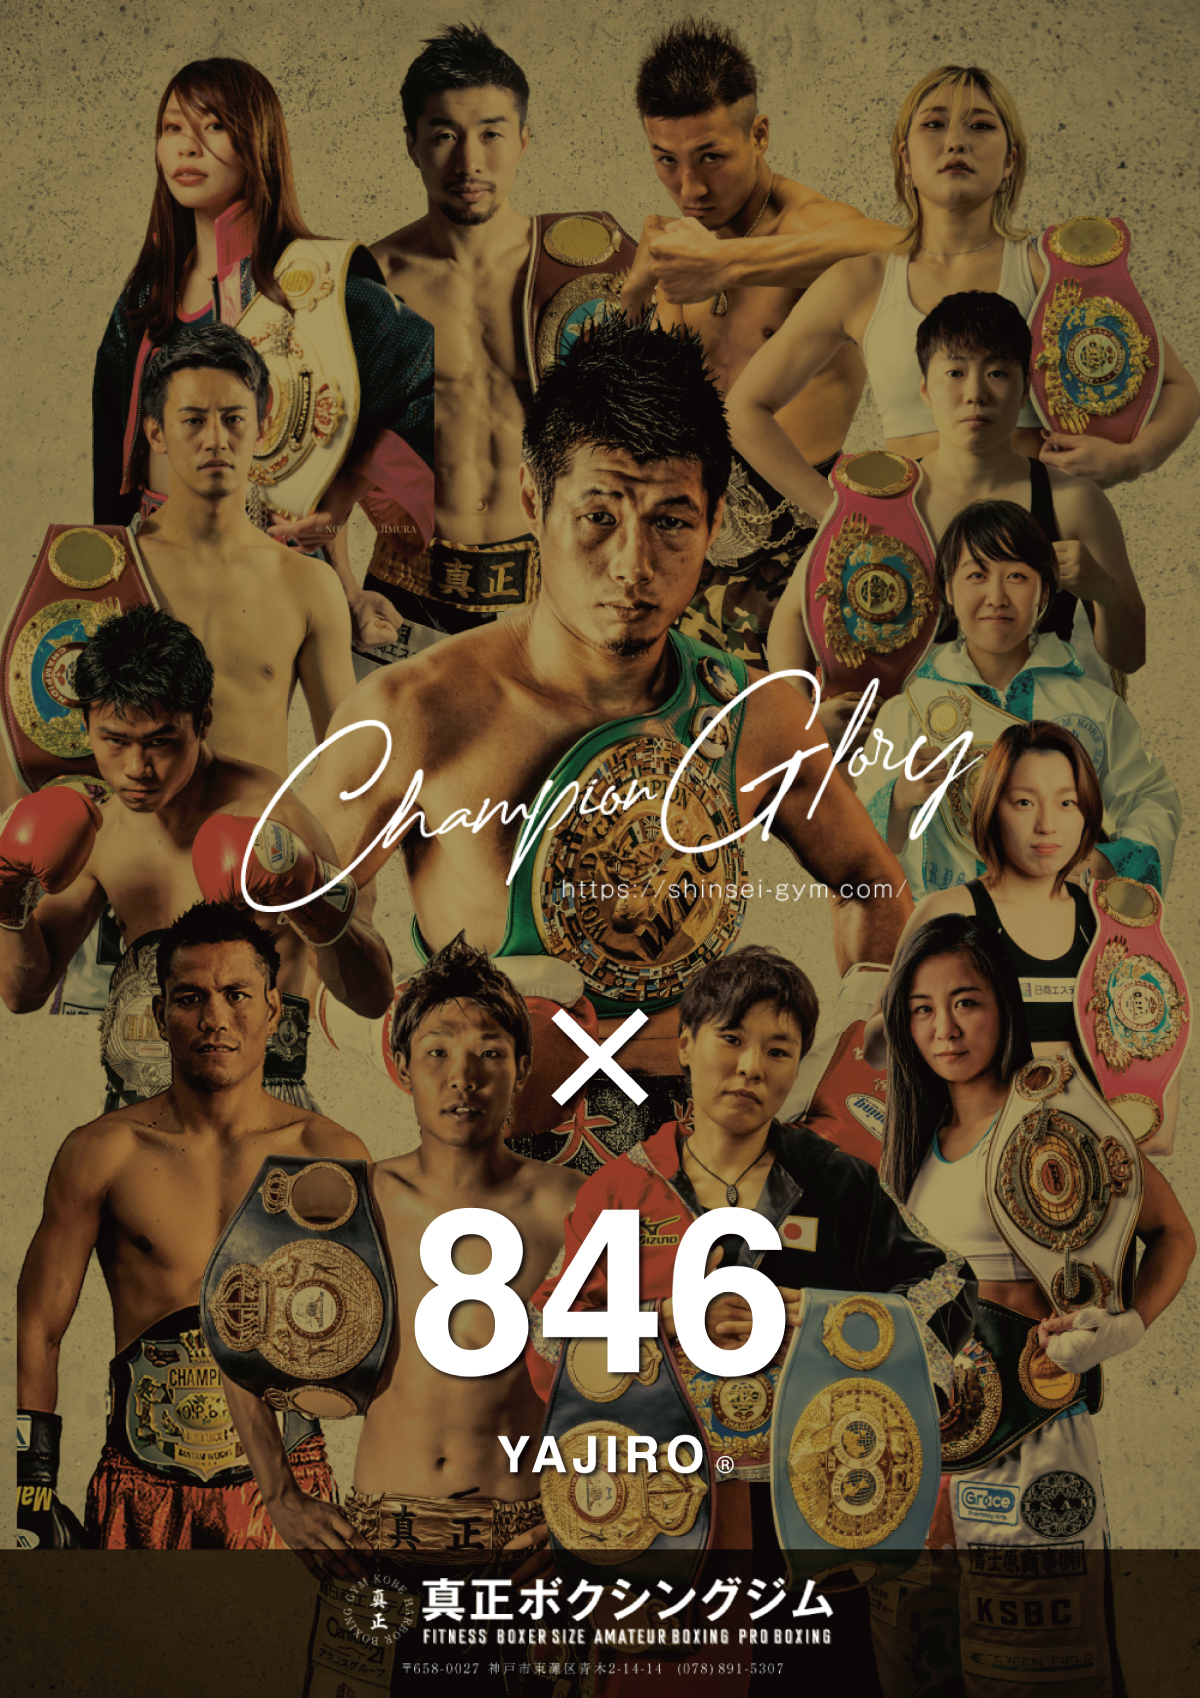 西日本最大級 名門ボクシングジムの
真正ボクシングジムがスポーツブランド
846YAJIRO-ヤジロ-と2023年サプライヤー契約を締結